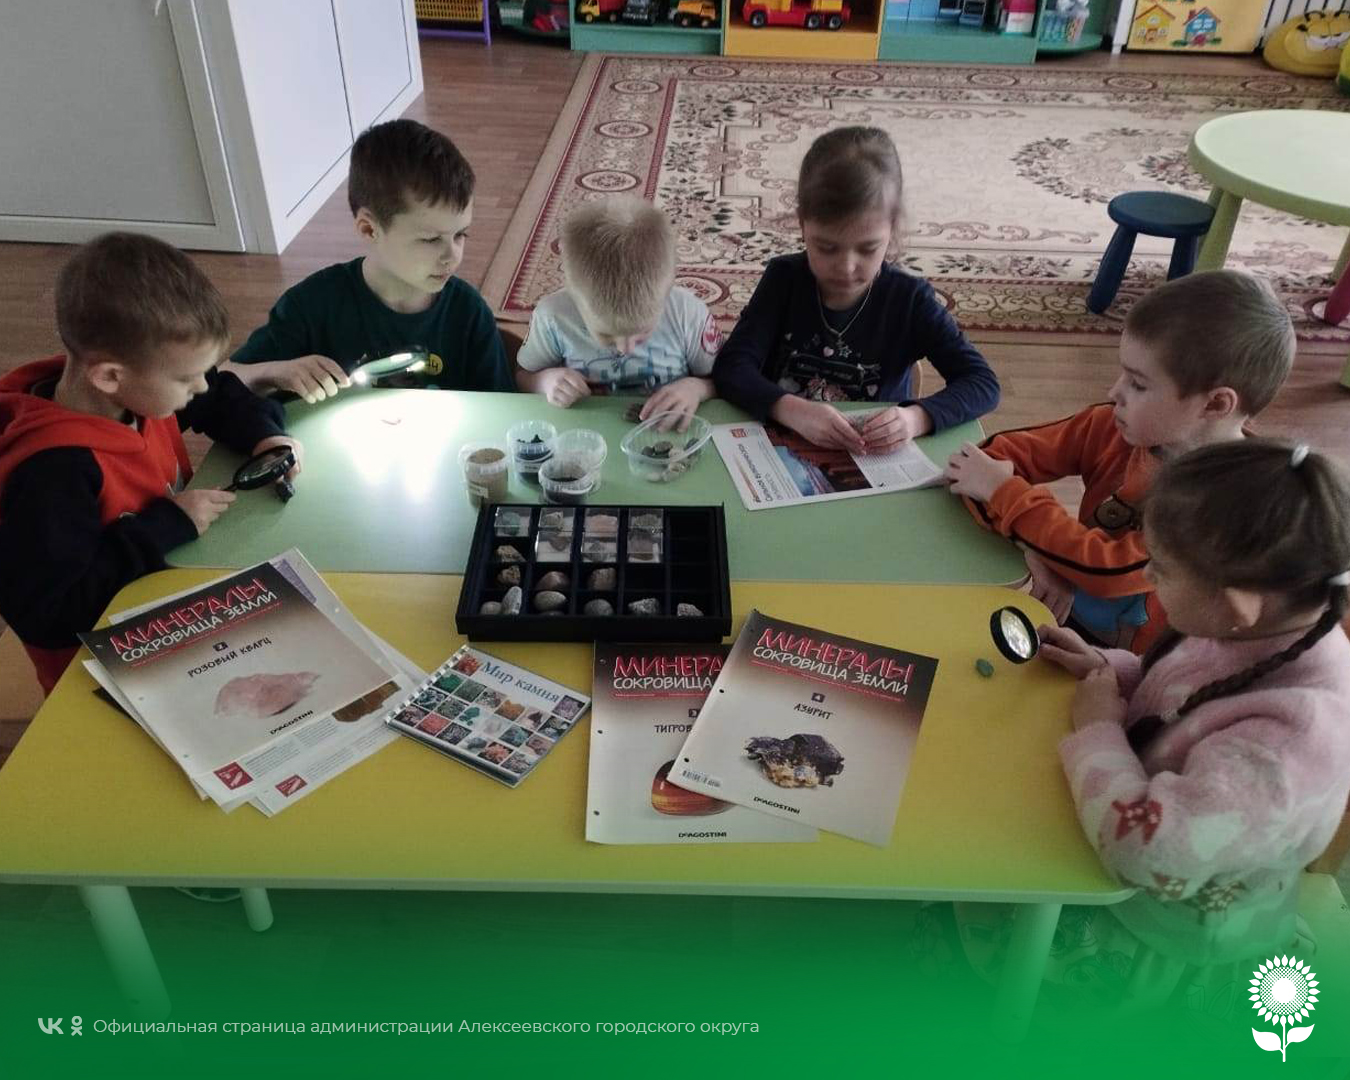 В детских садах Алексеевского городского округа прошло мероприятие, посвященное профессиональному празднику геологов.